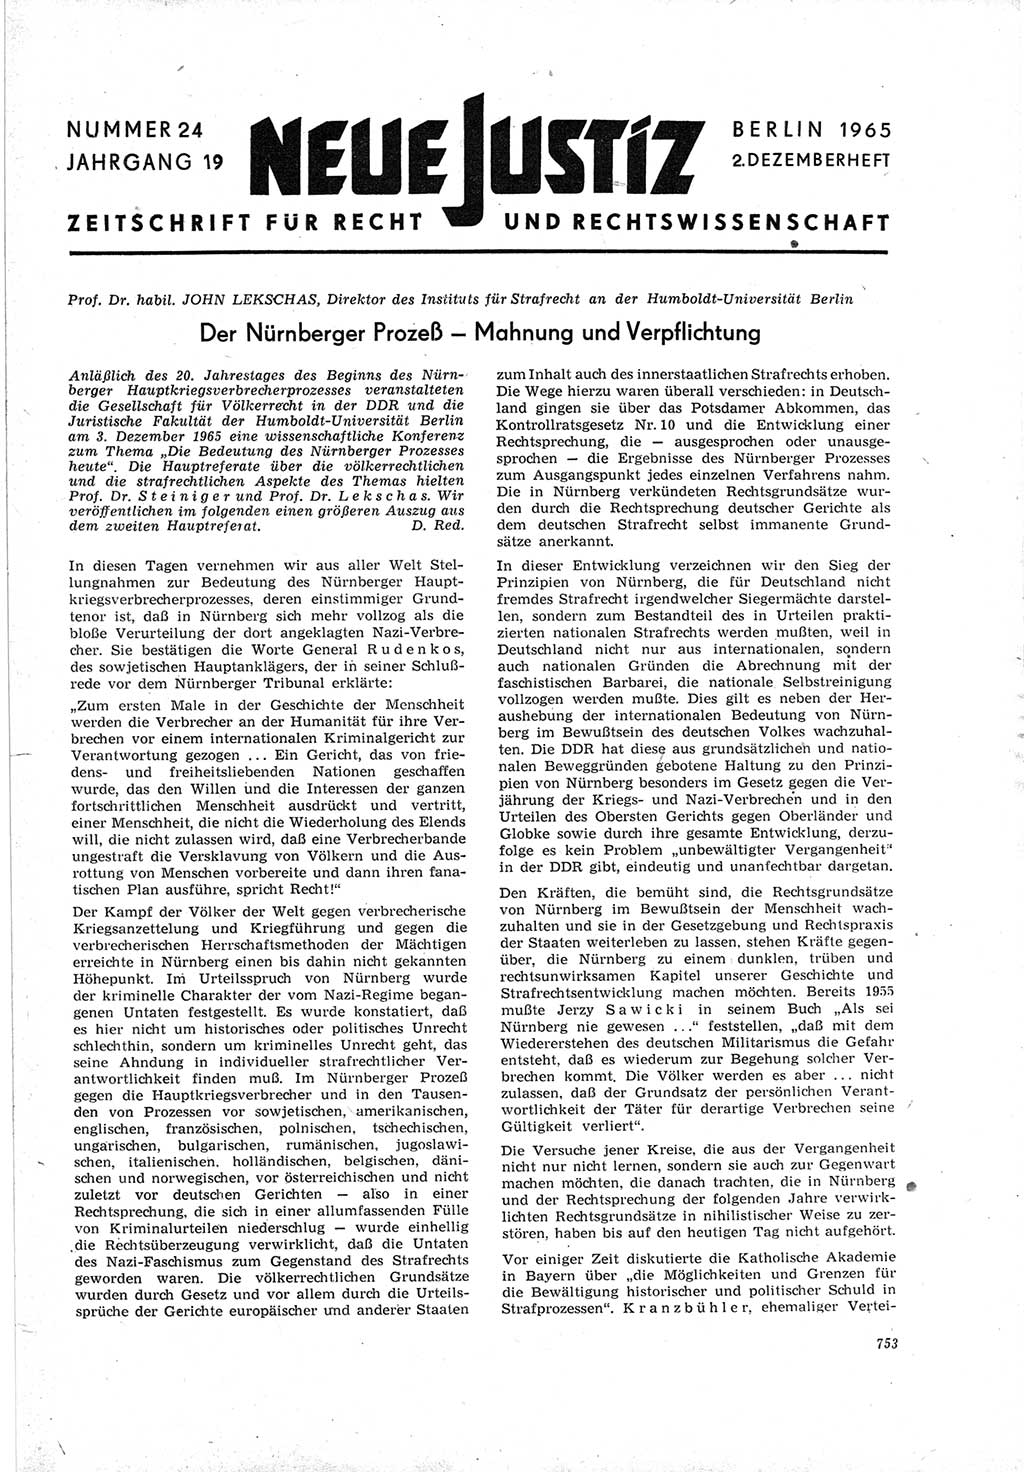 Neue Justiz (NJ), Zeitschrift für Recht und Rechtswissenschaft [Deutsche Demokratische Republik (DDR)], 19. Jahrgang 1965, Seite 753 (NJ DDR 1965, S. 753)